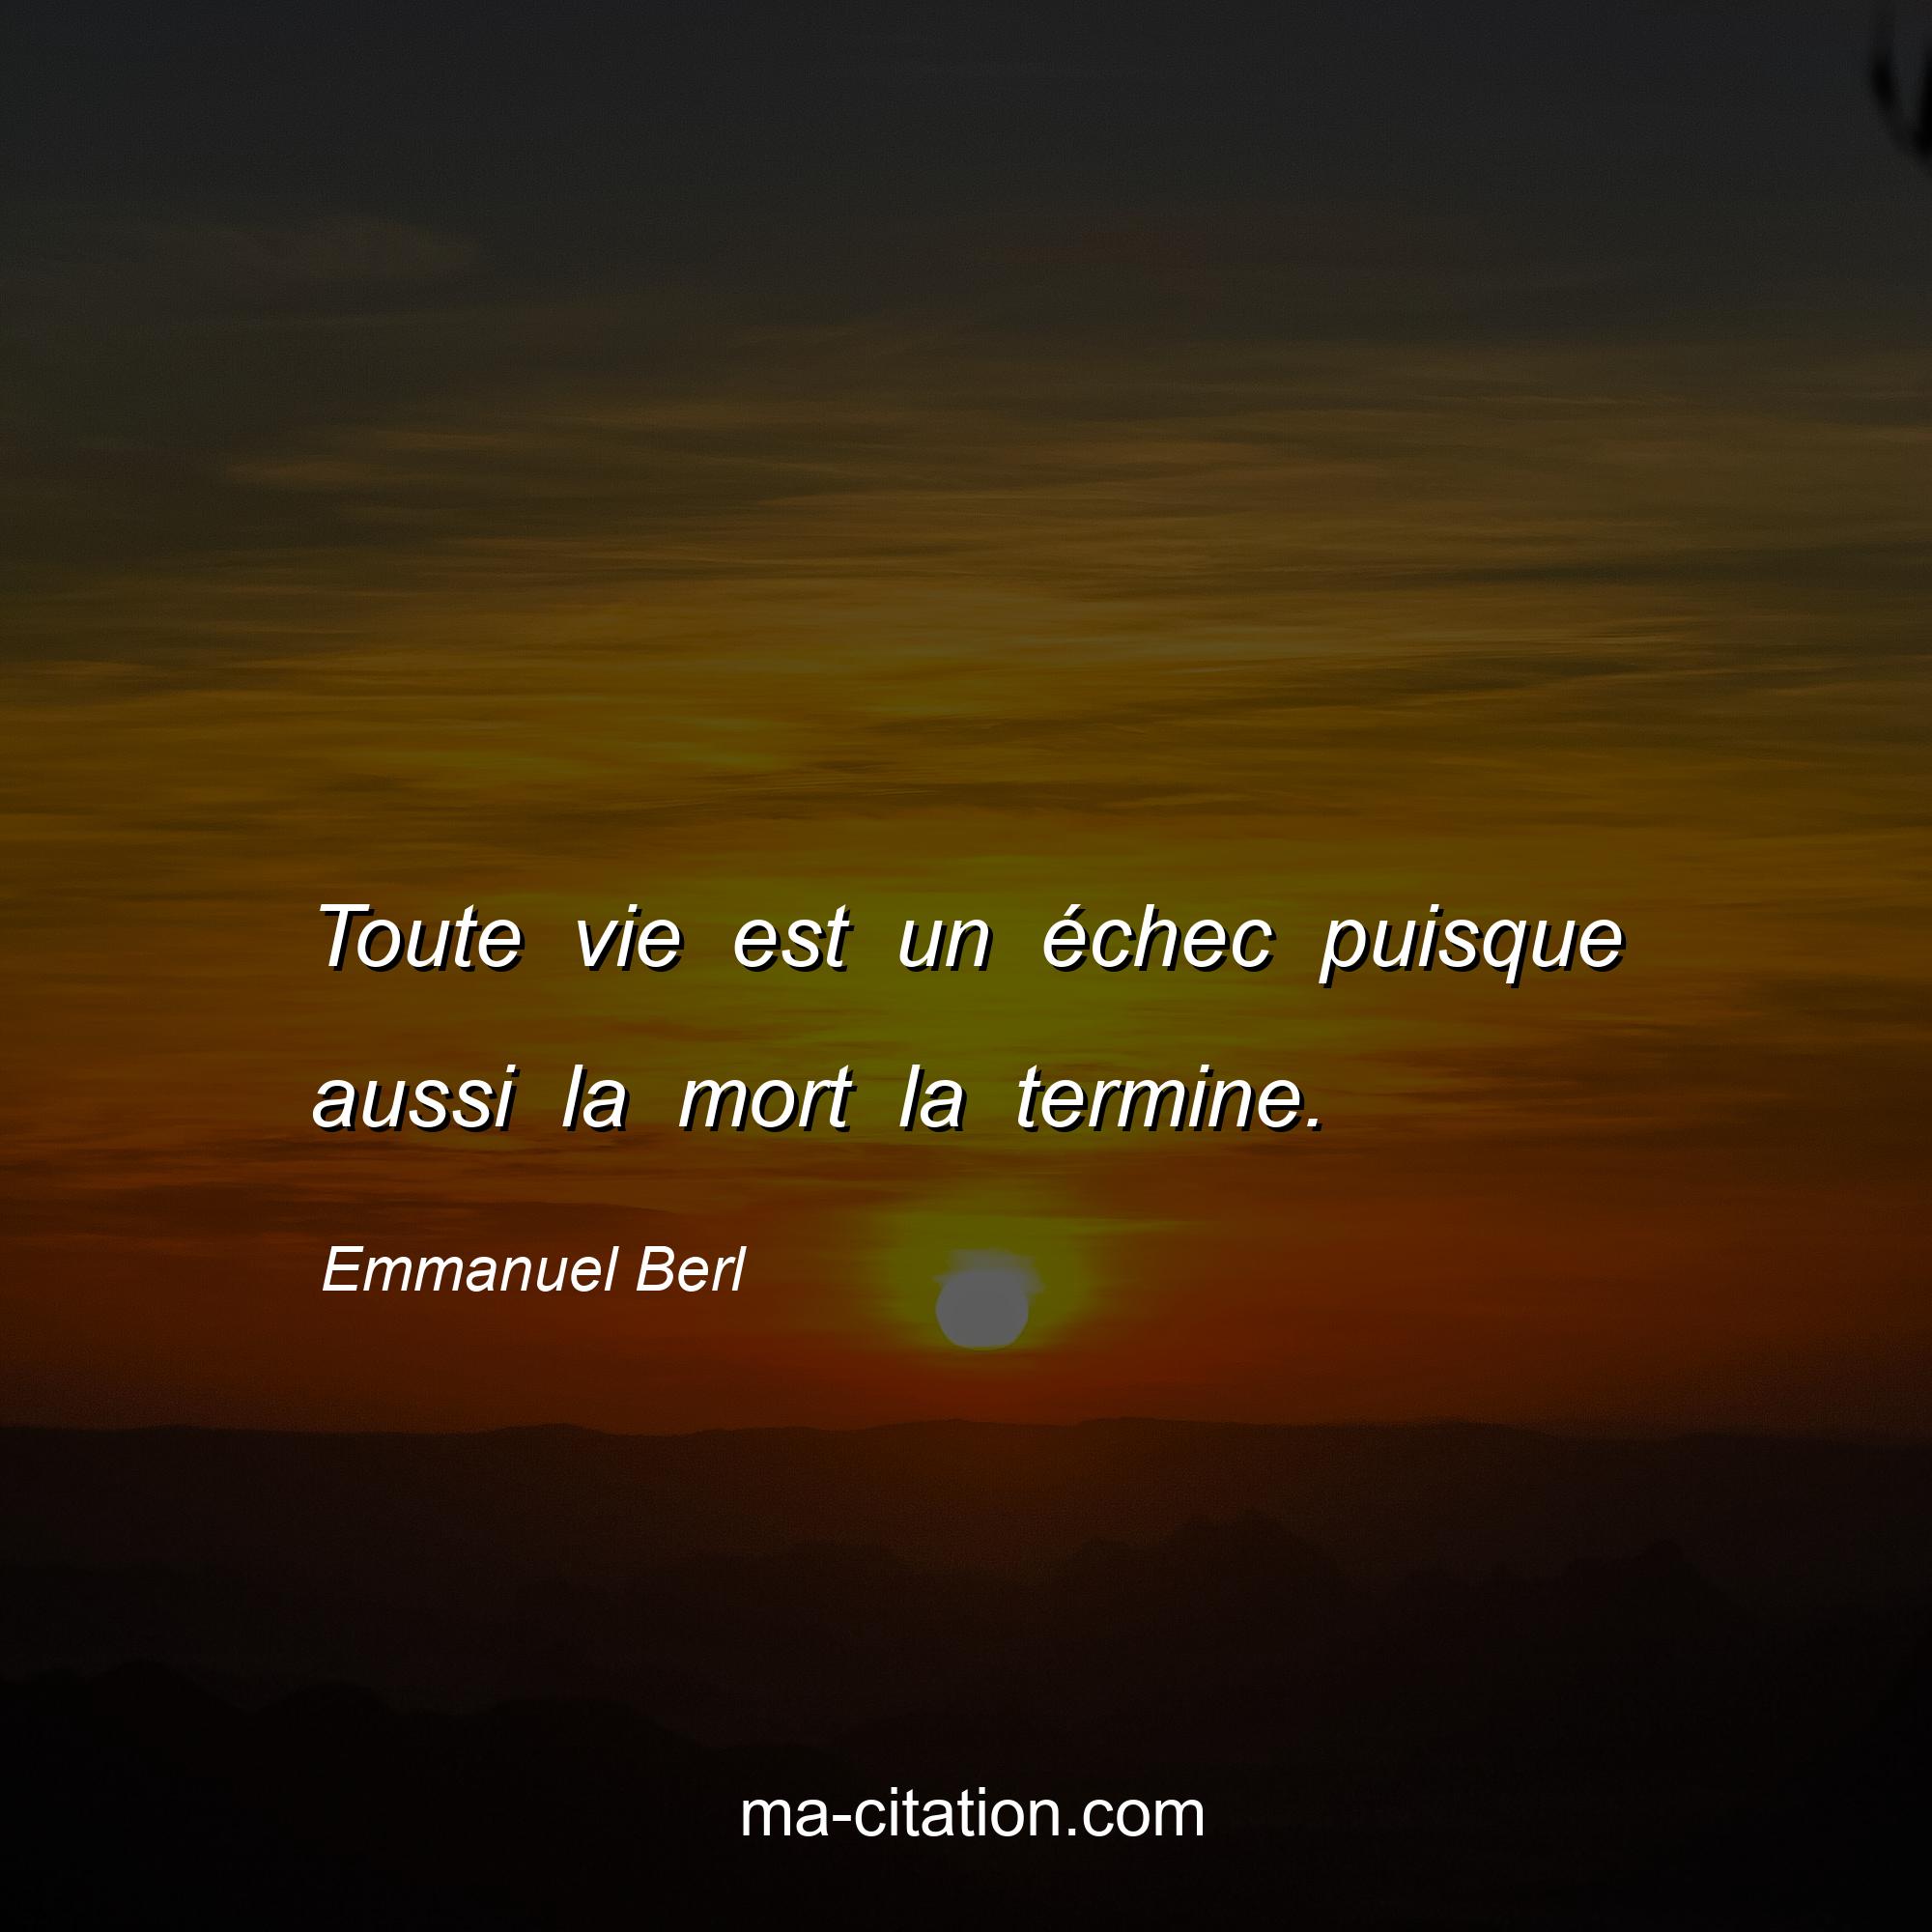 Emmanuel Berl : Toute vie est un échec puisque aussi la mort la termine.